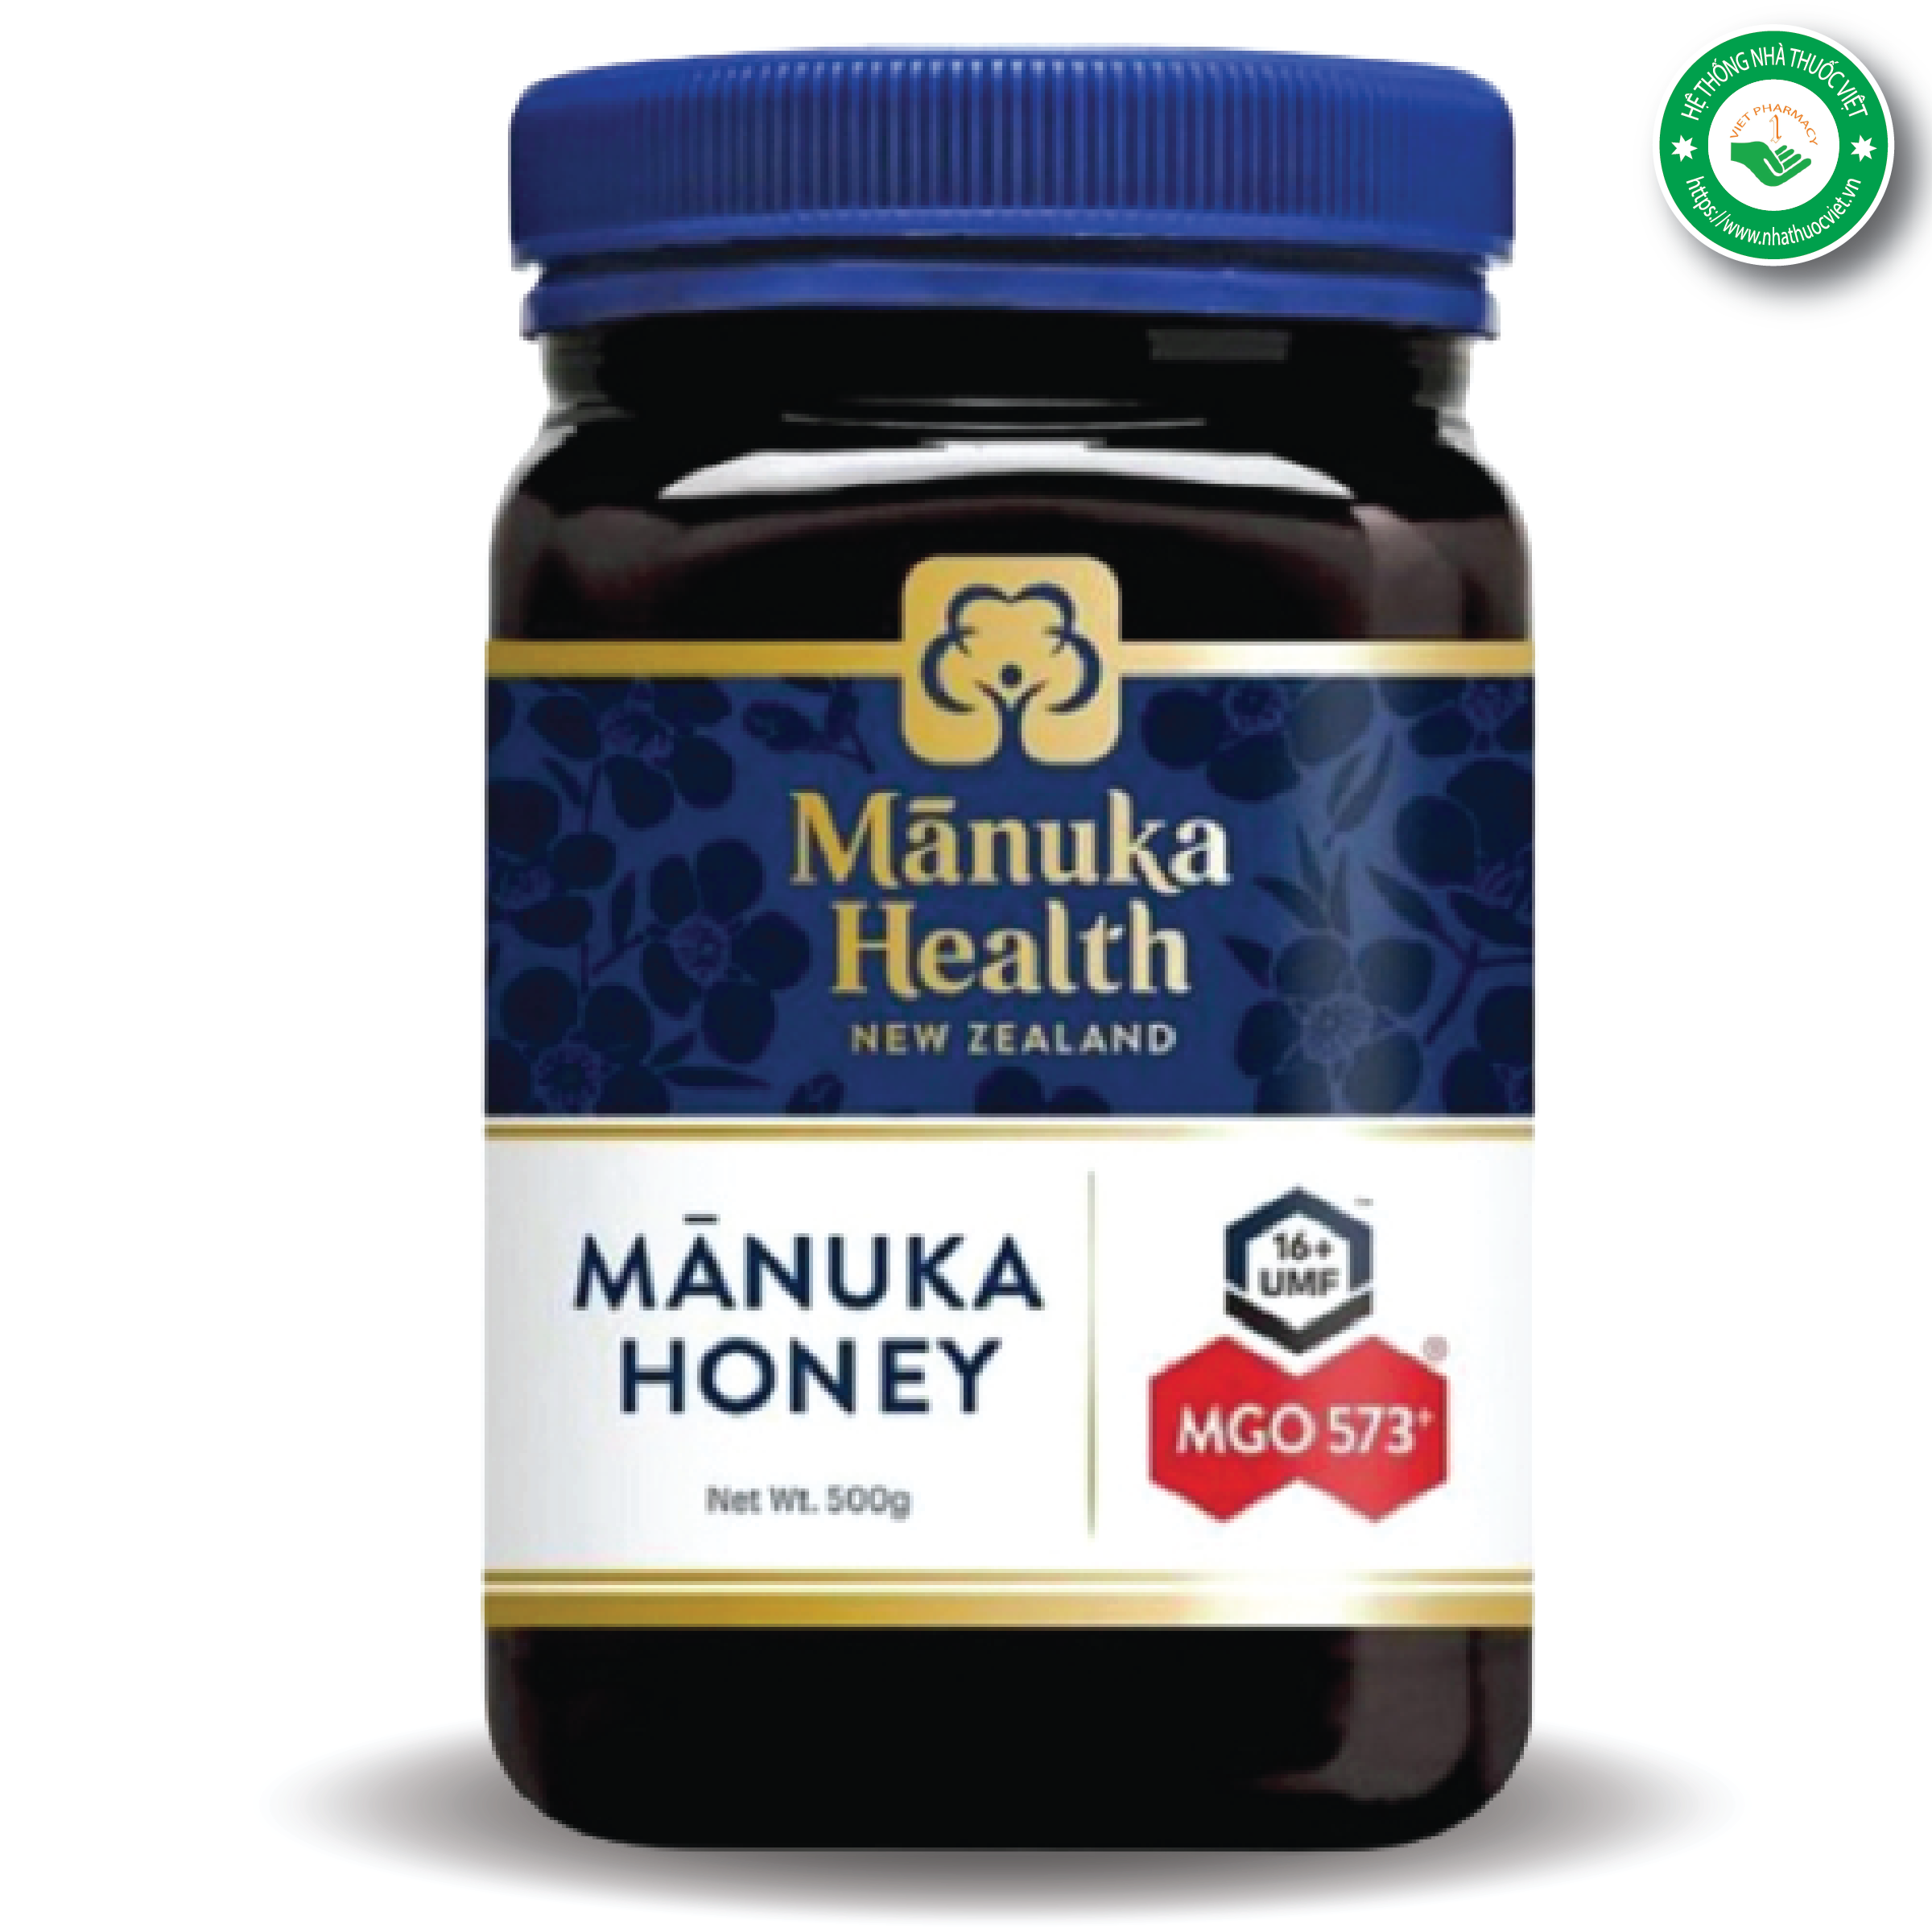 Cách sử dụng và tiêu thụ mật ong Manuka New Zealand 500g?
